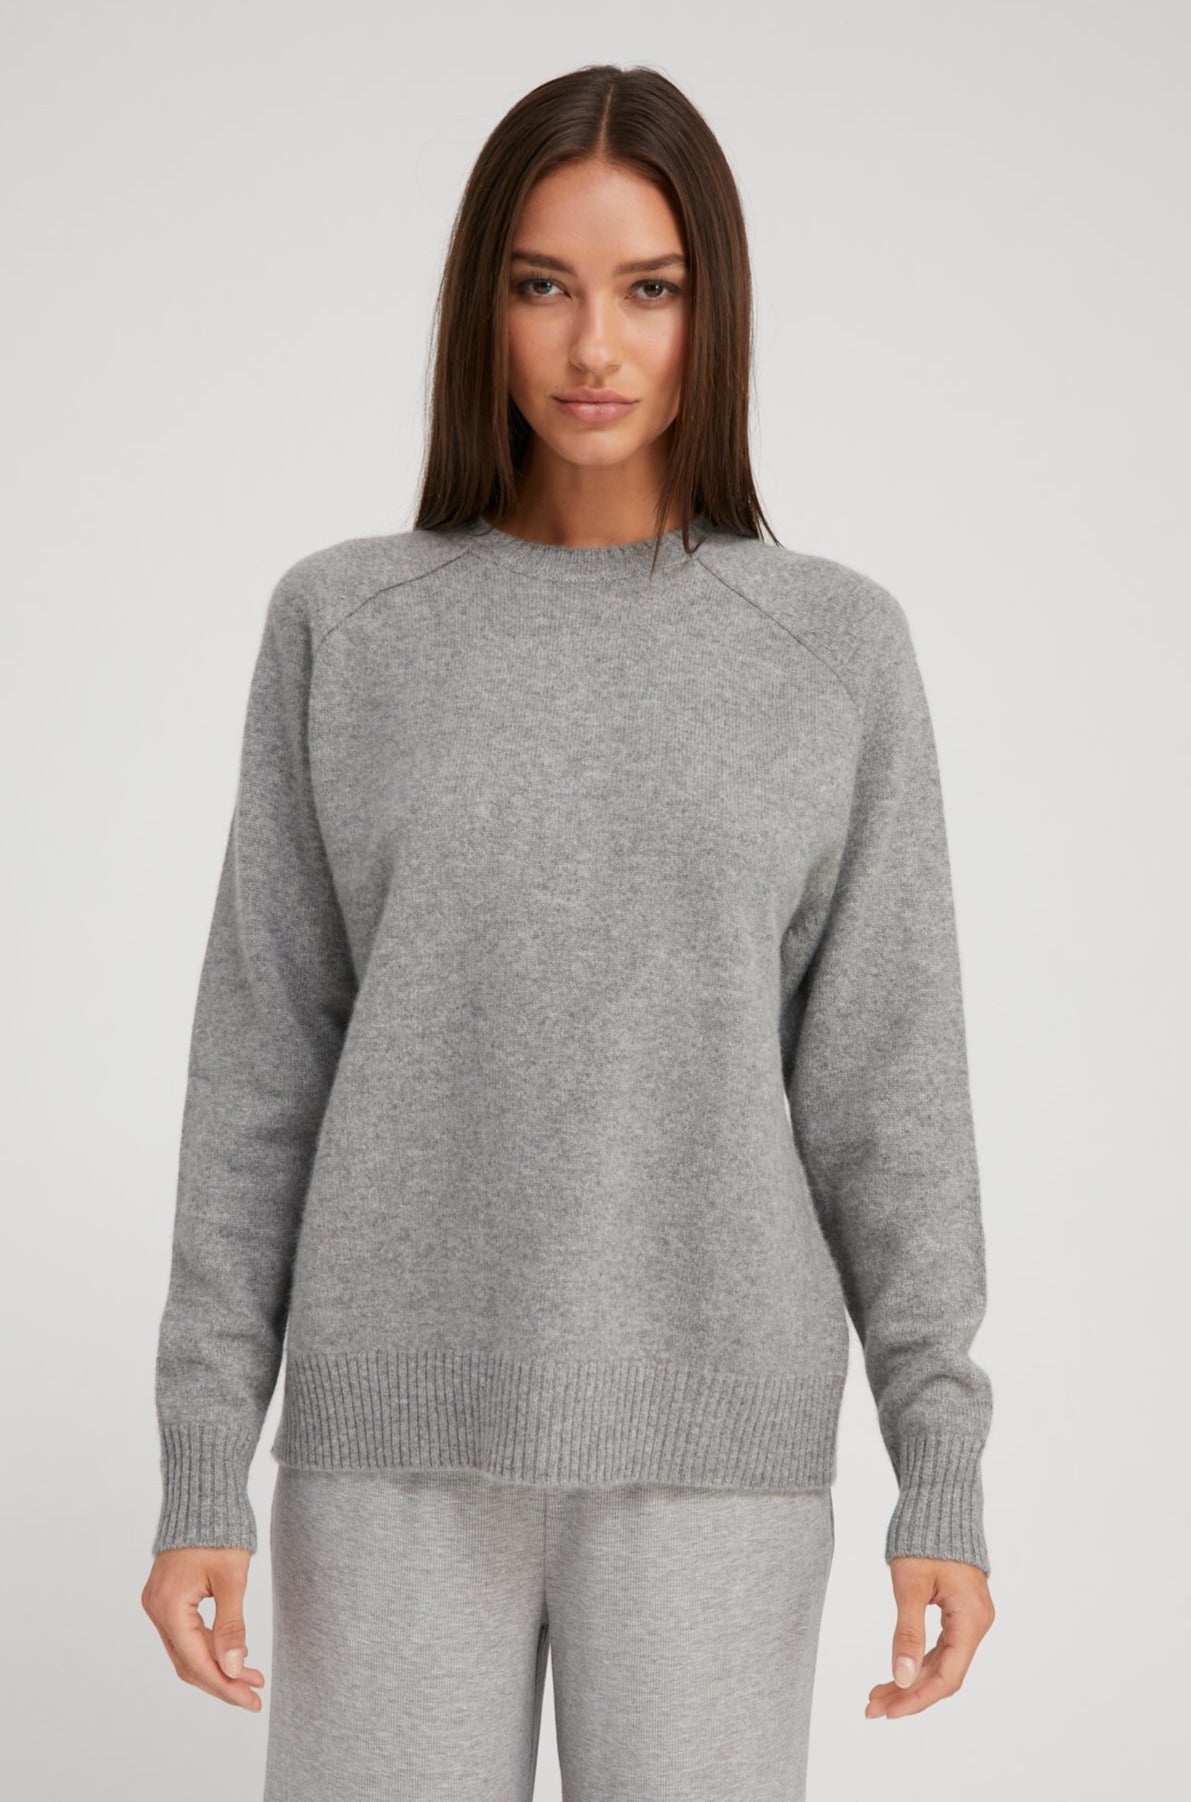 Grey Cashmere Boyfriend Sweater